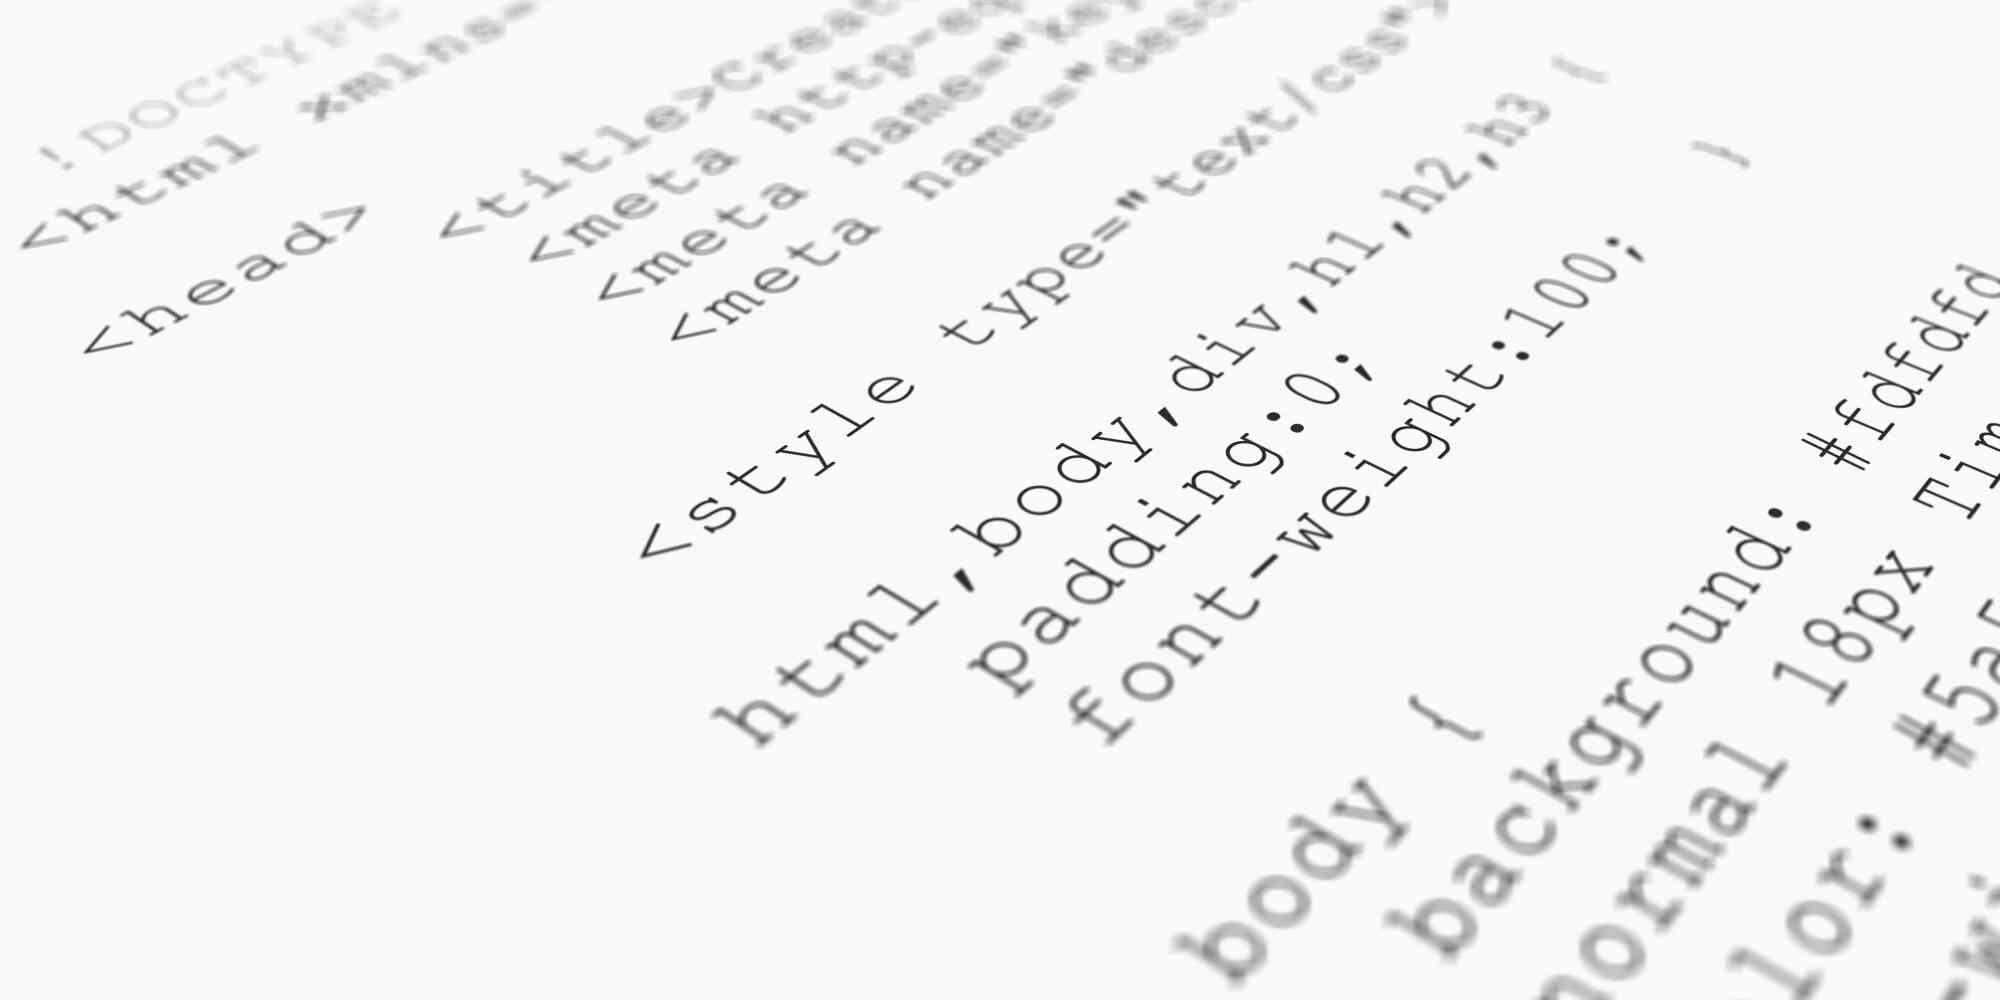 图中是一个白色的背景，上面是HTML代码，包括了meta、style、body、div等标签和相关属性。